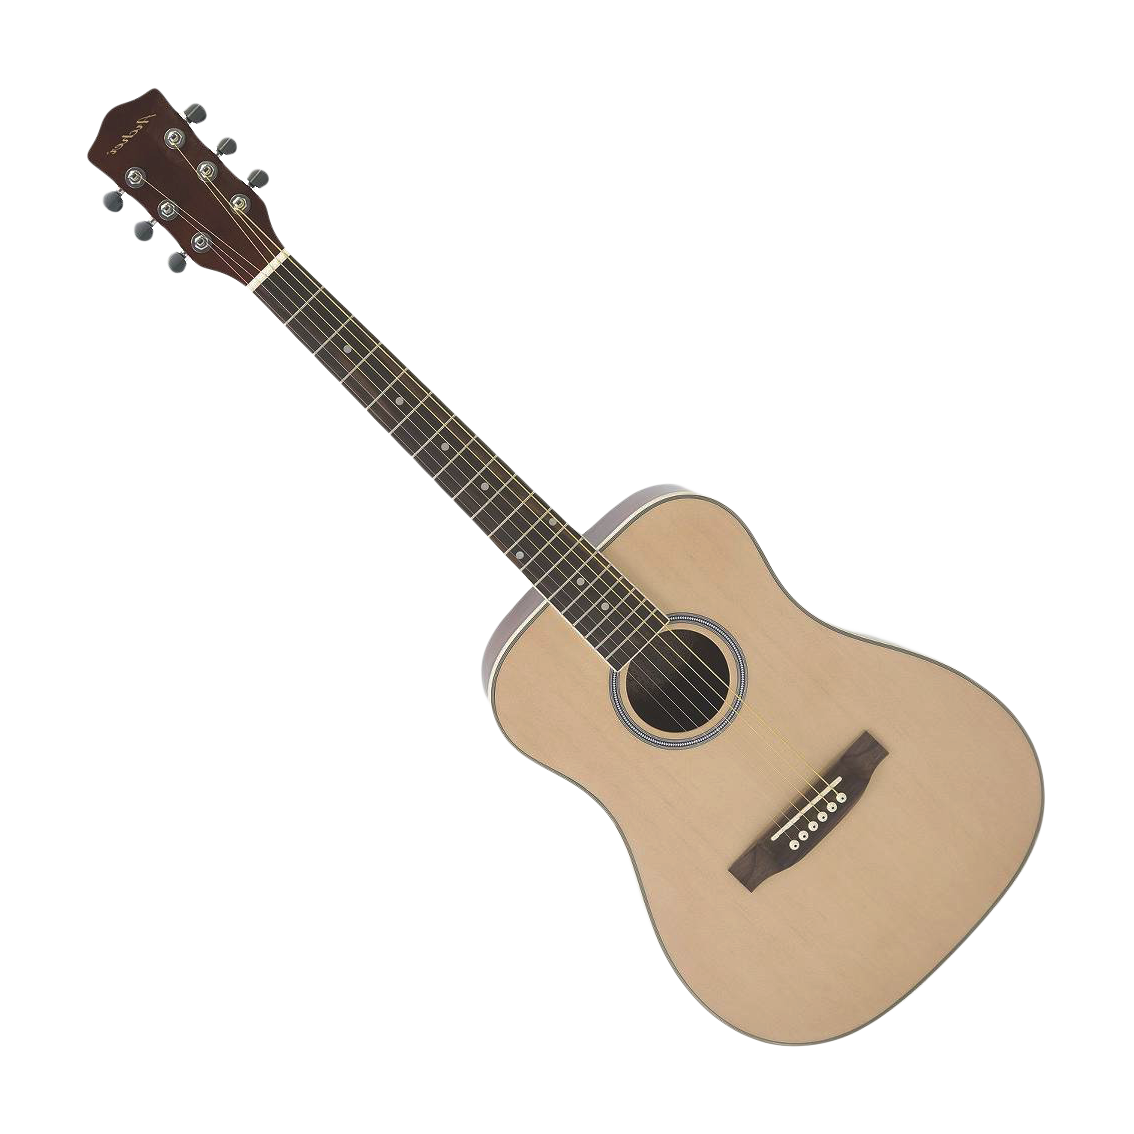 Immagine del PNG della chitarra con sfondo Trasparente